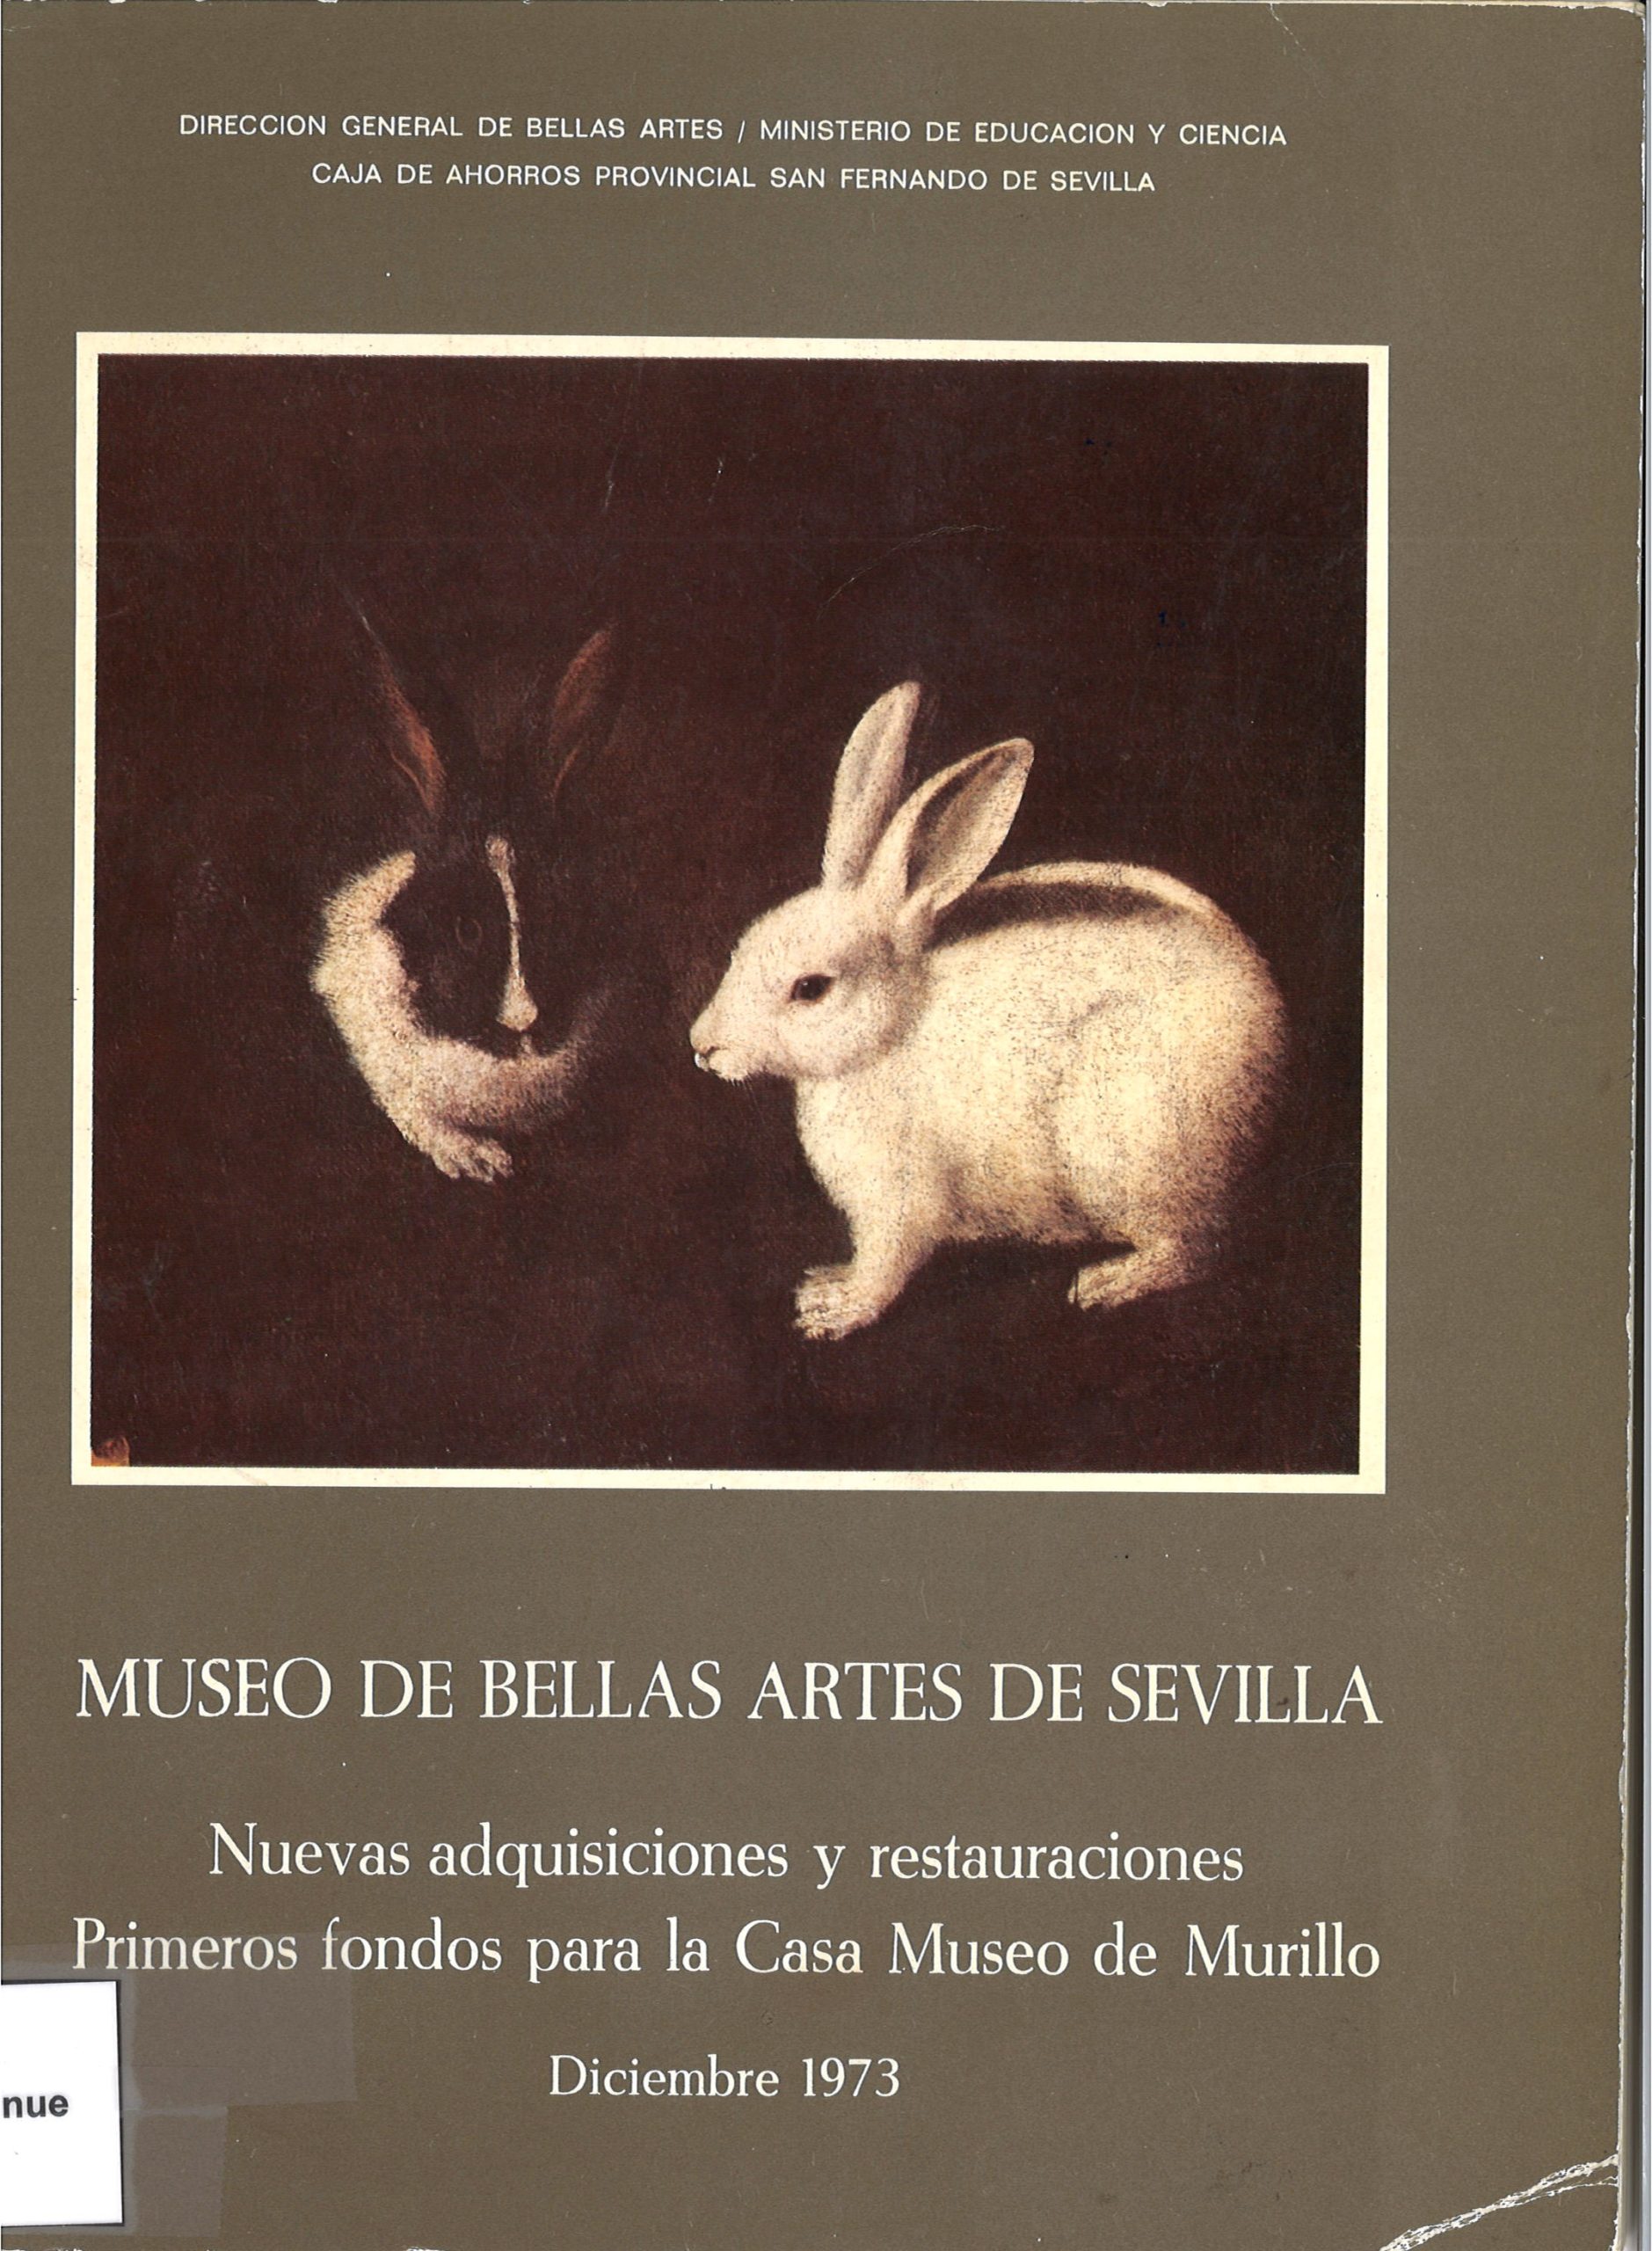 Nuevas adquisiciones y Restauraciones del Museo de Bellas Artes de Sevilla-image